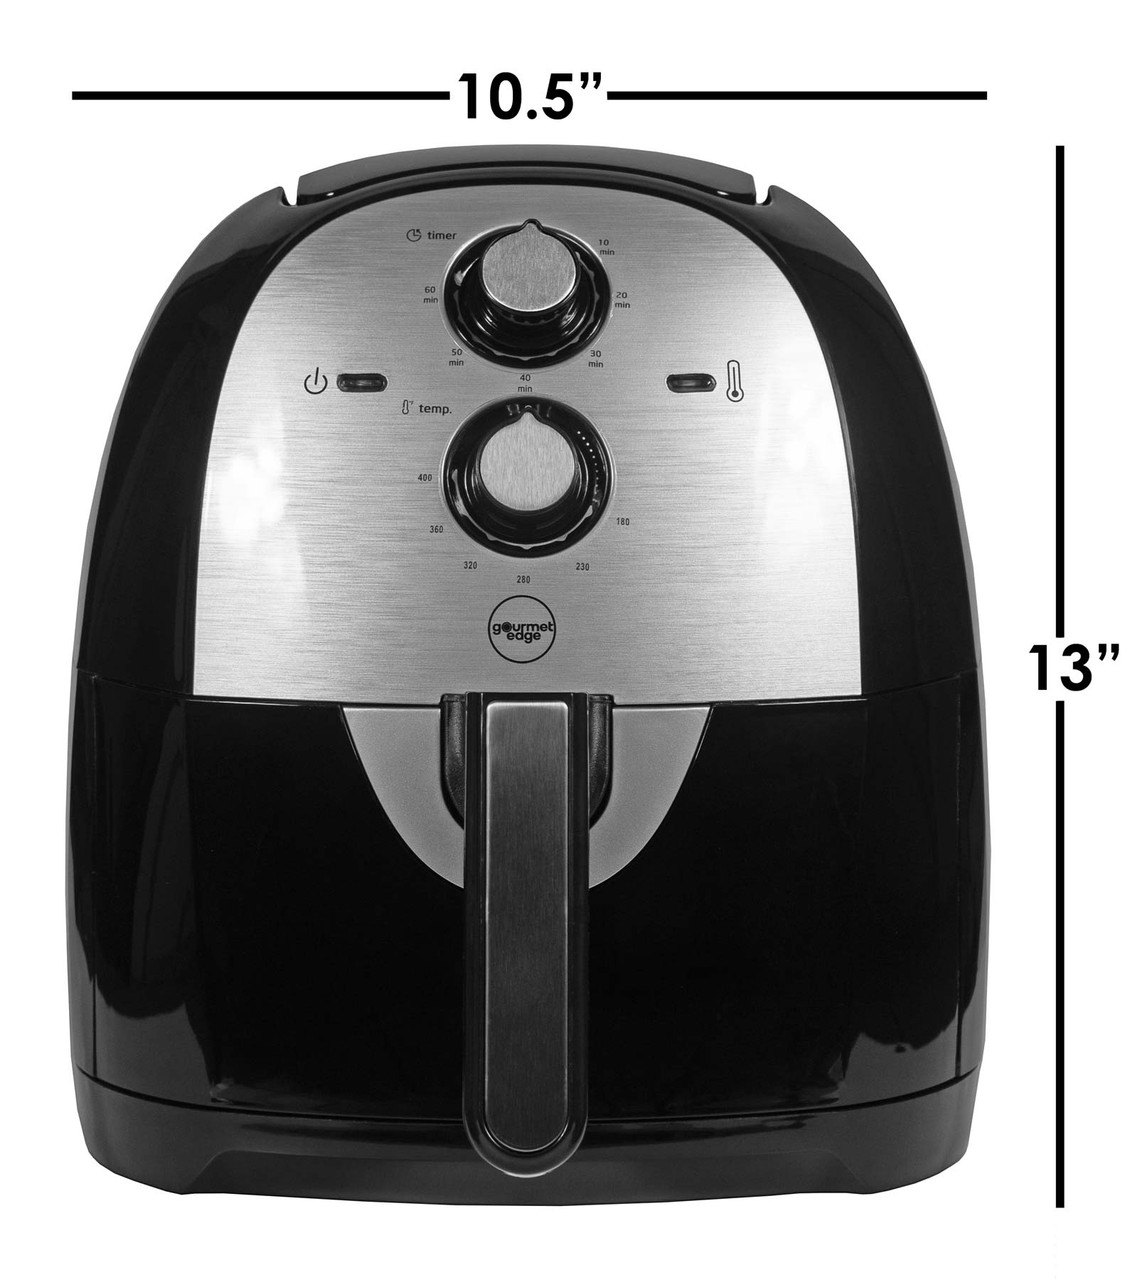 Maxi-Matic Elite Gourmet 4-Qt Air Fryer - Black - 9796439